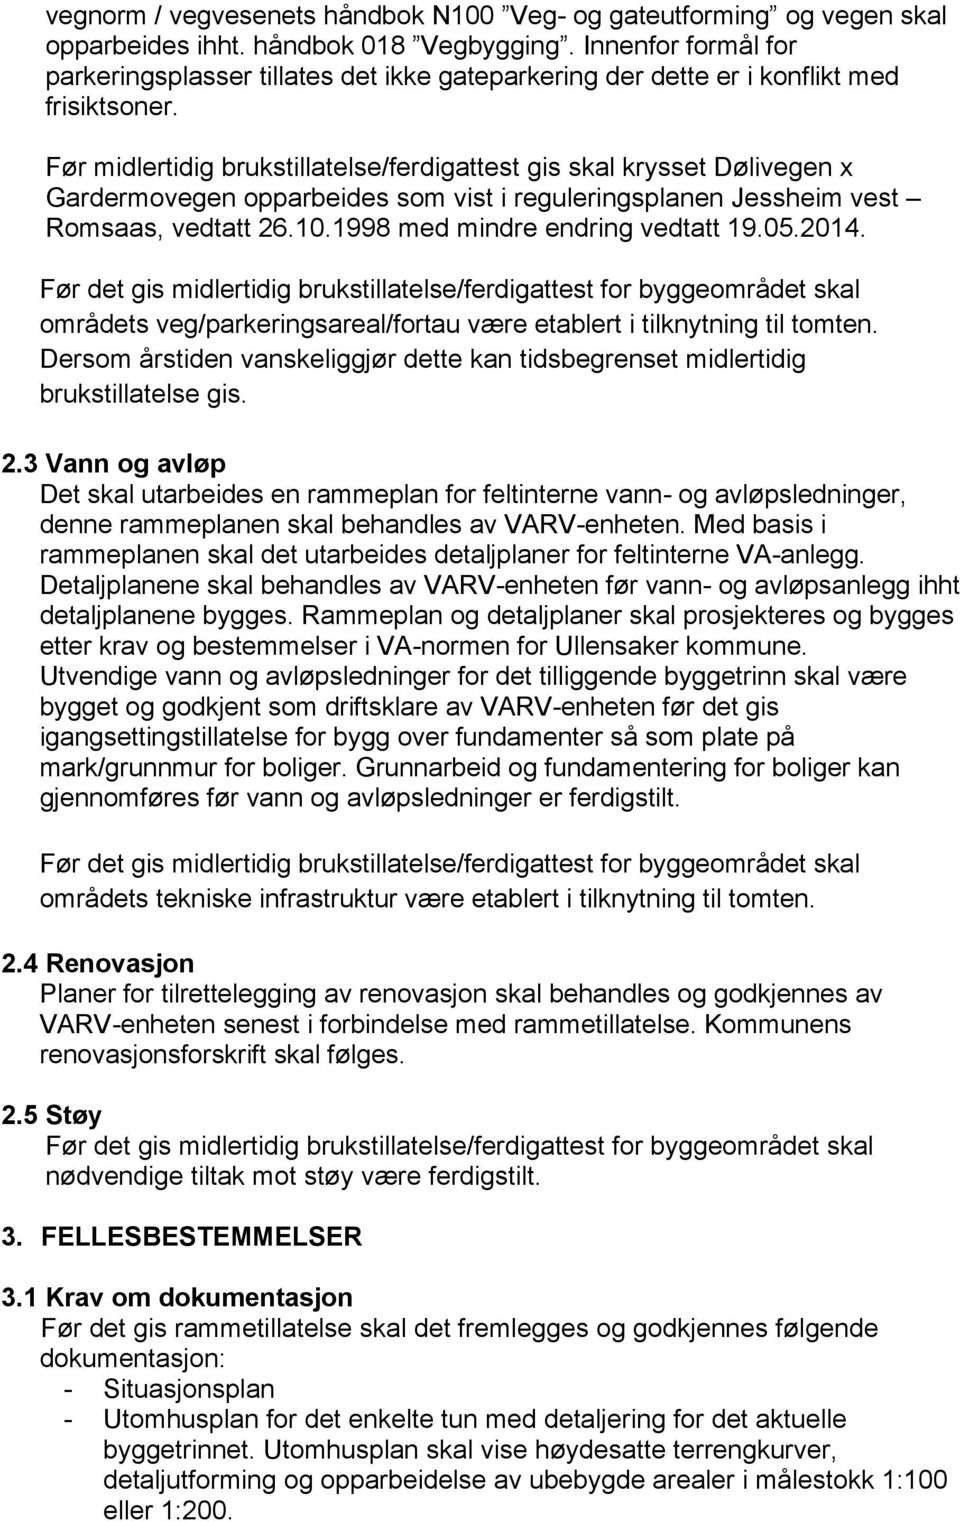 Før midlertidig brukstillatelse/ferdigattest gis skal krysset Dølivegen x Gardermovegen opparbeides som vist i reguleringsplanen Jessheim vest Romsaas, vedtatt 26.10.